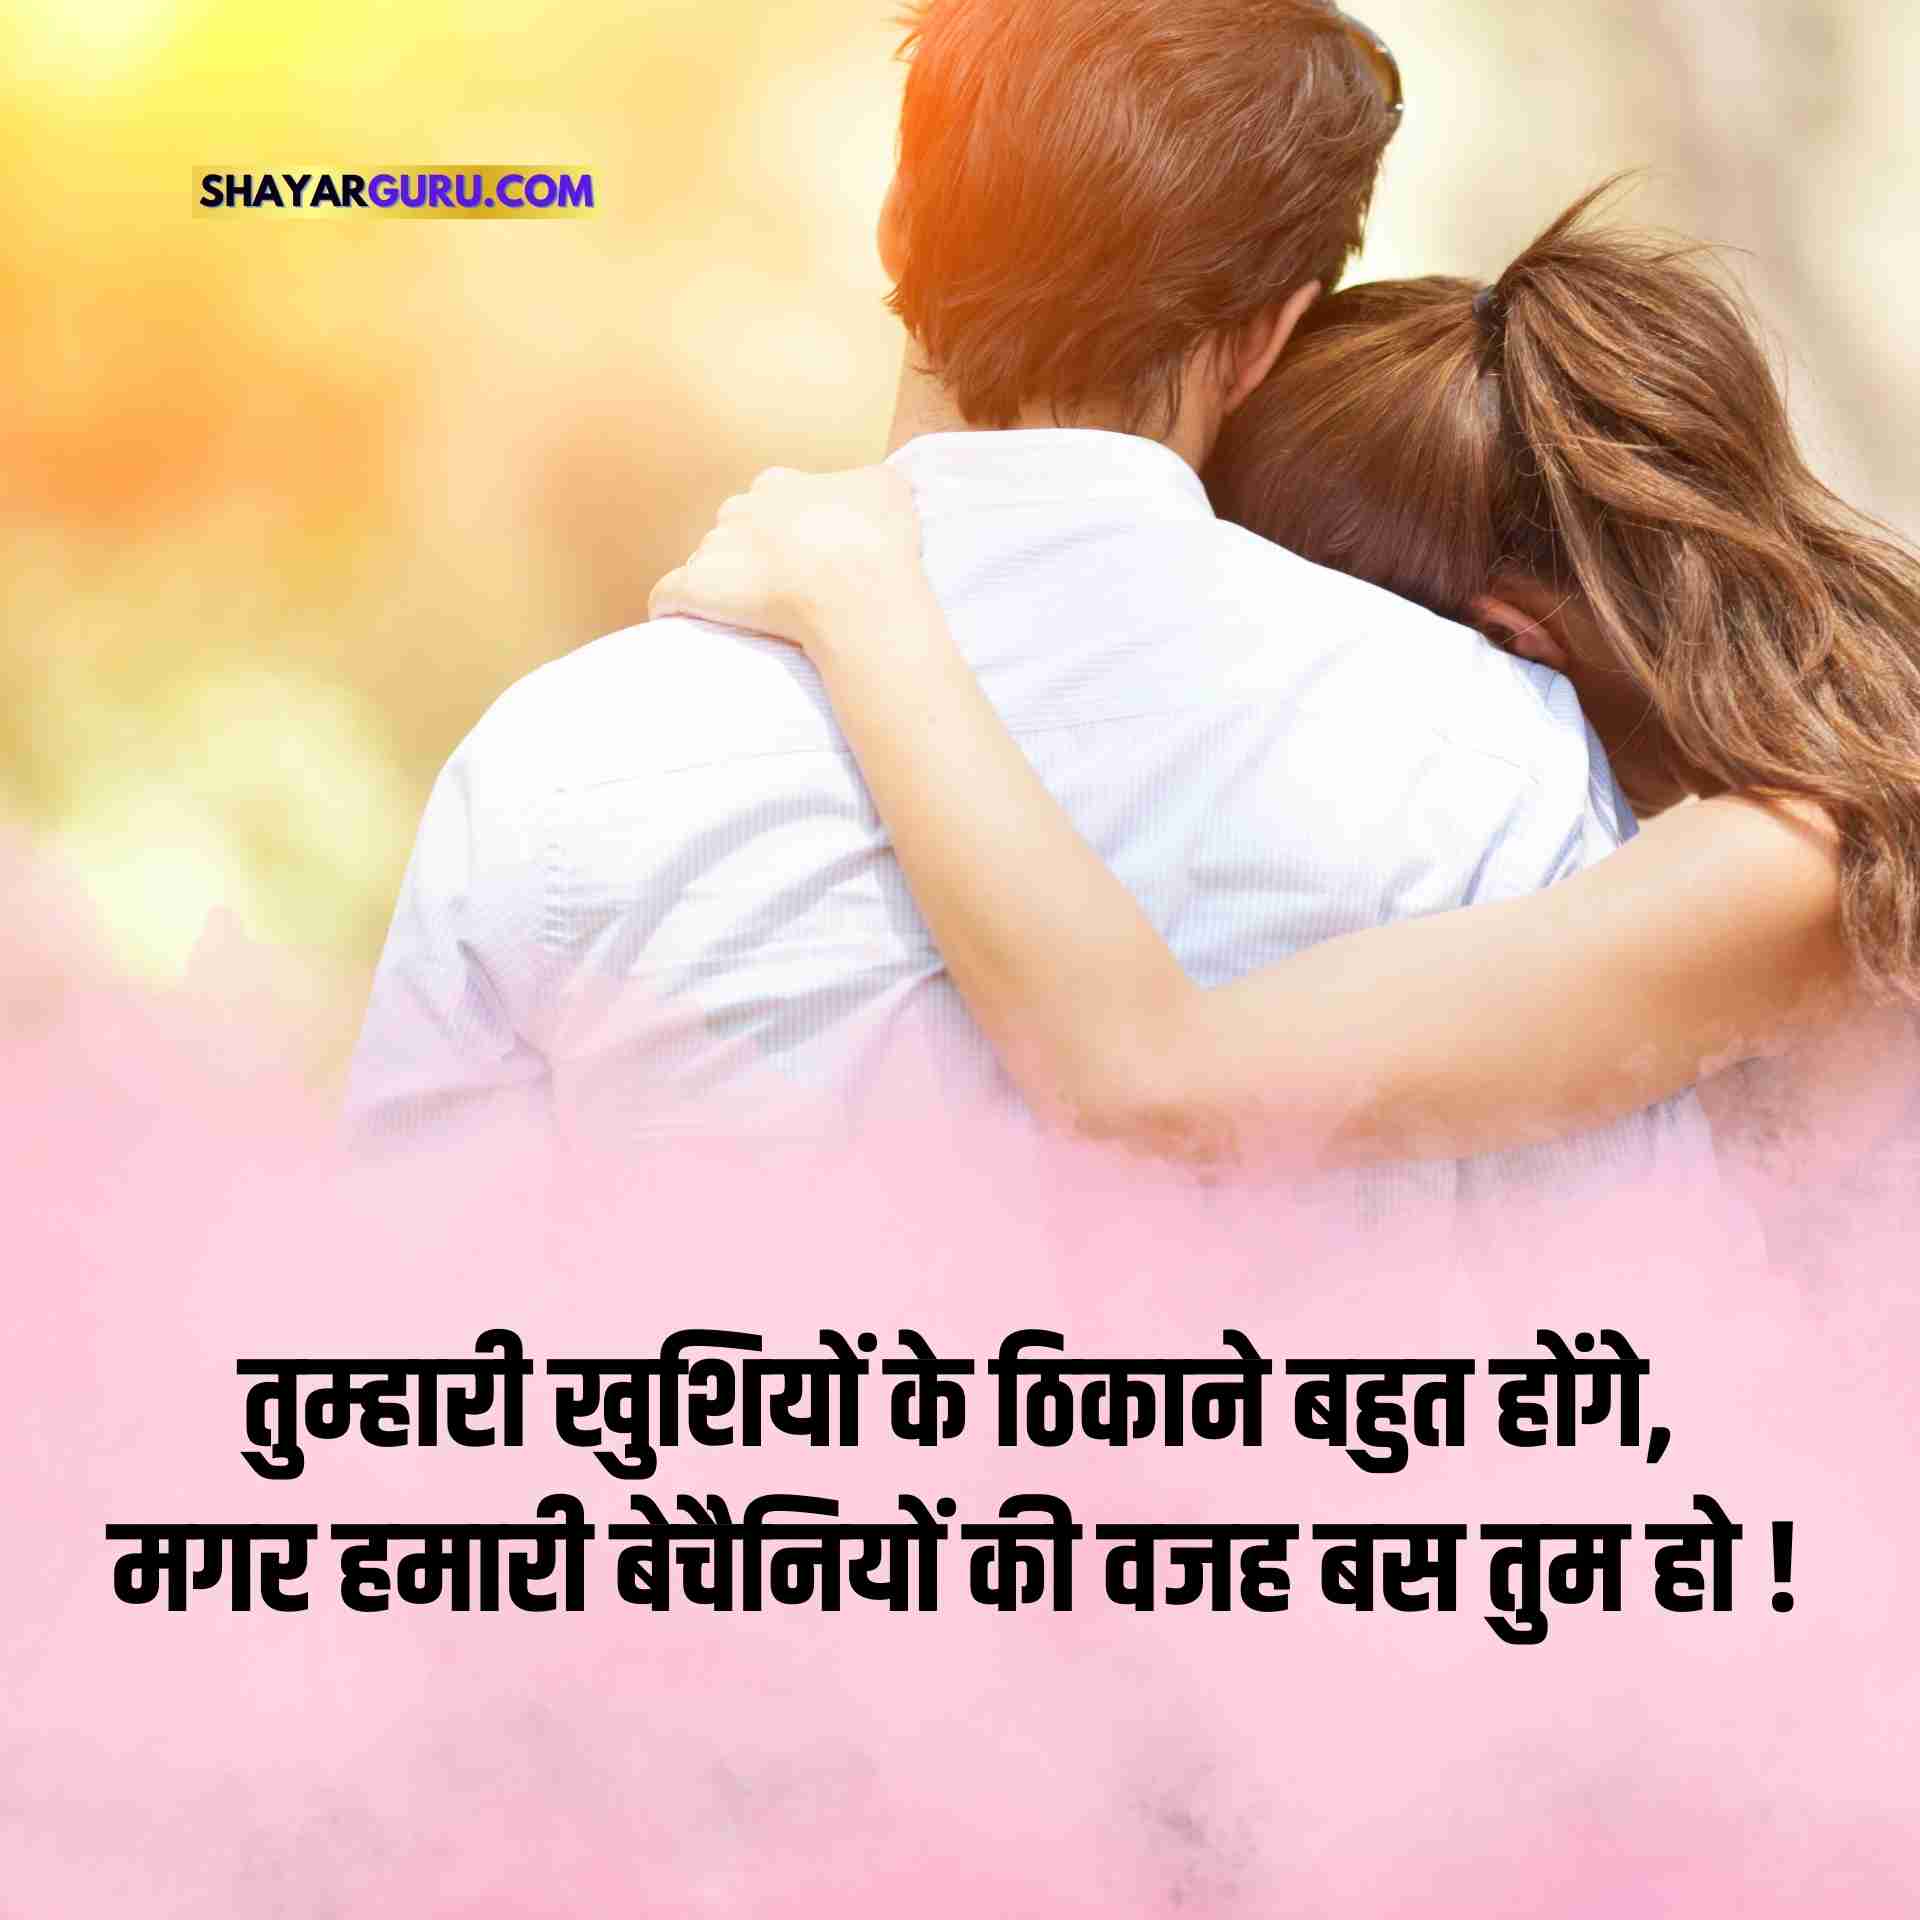 Love Shayari in Hindi images